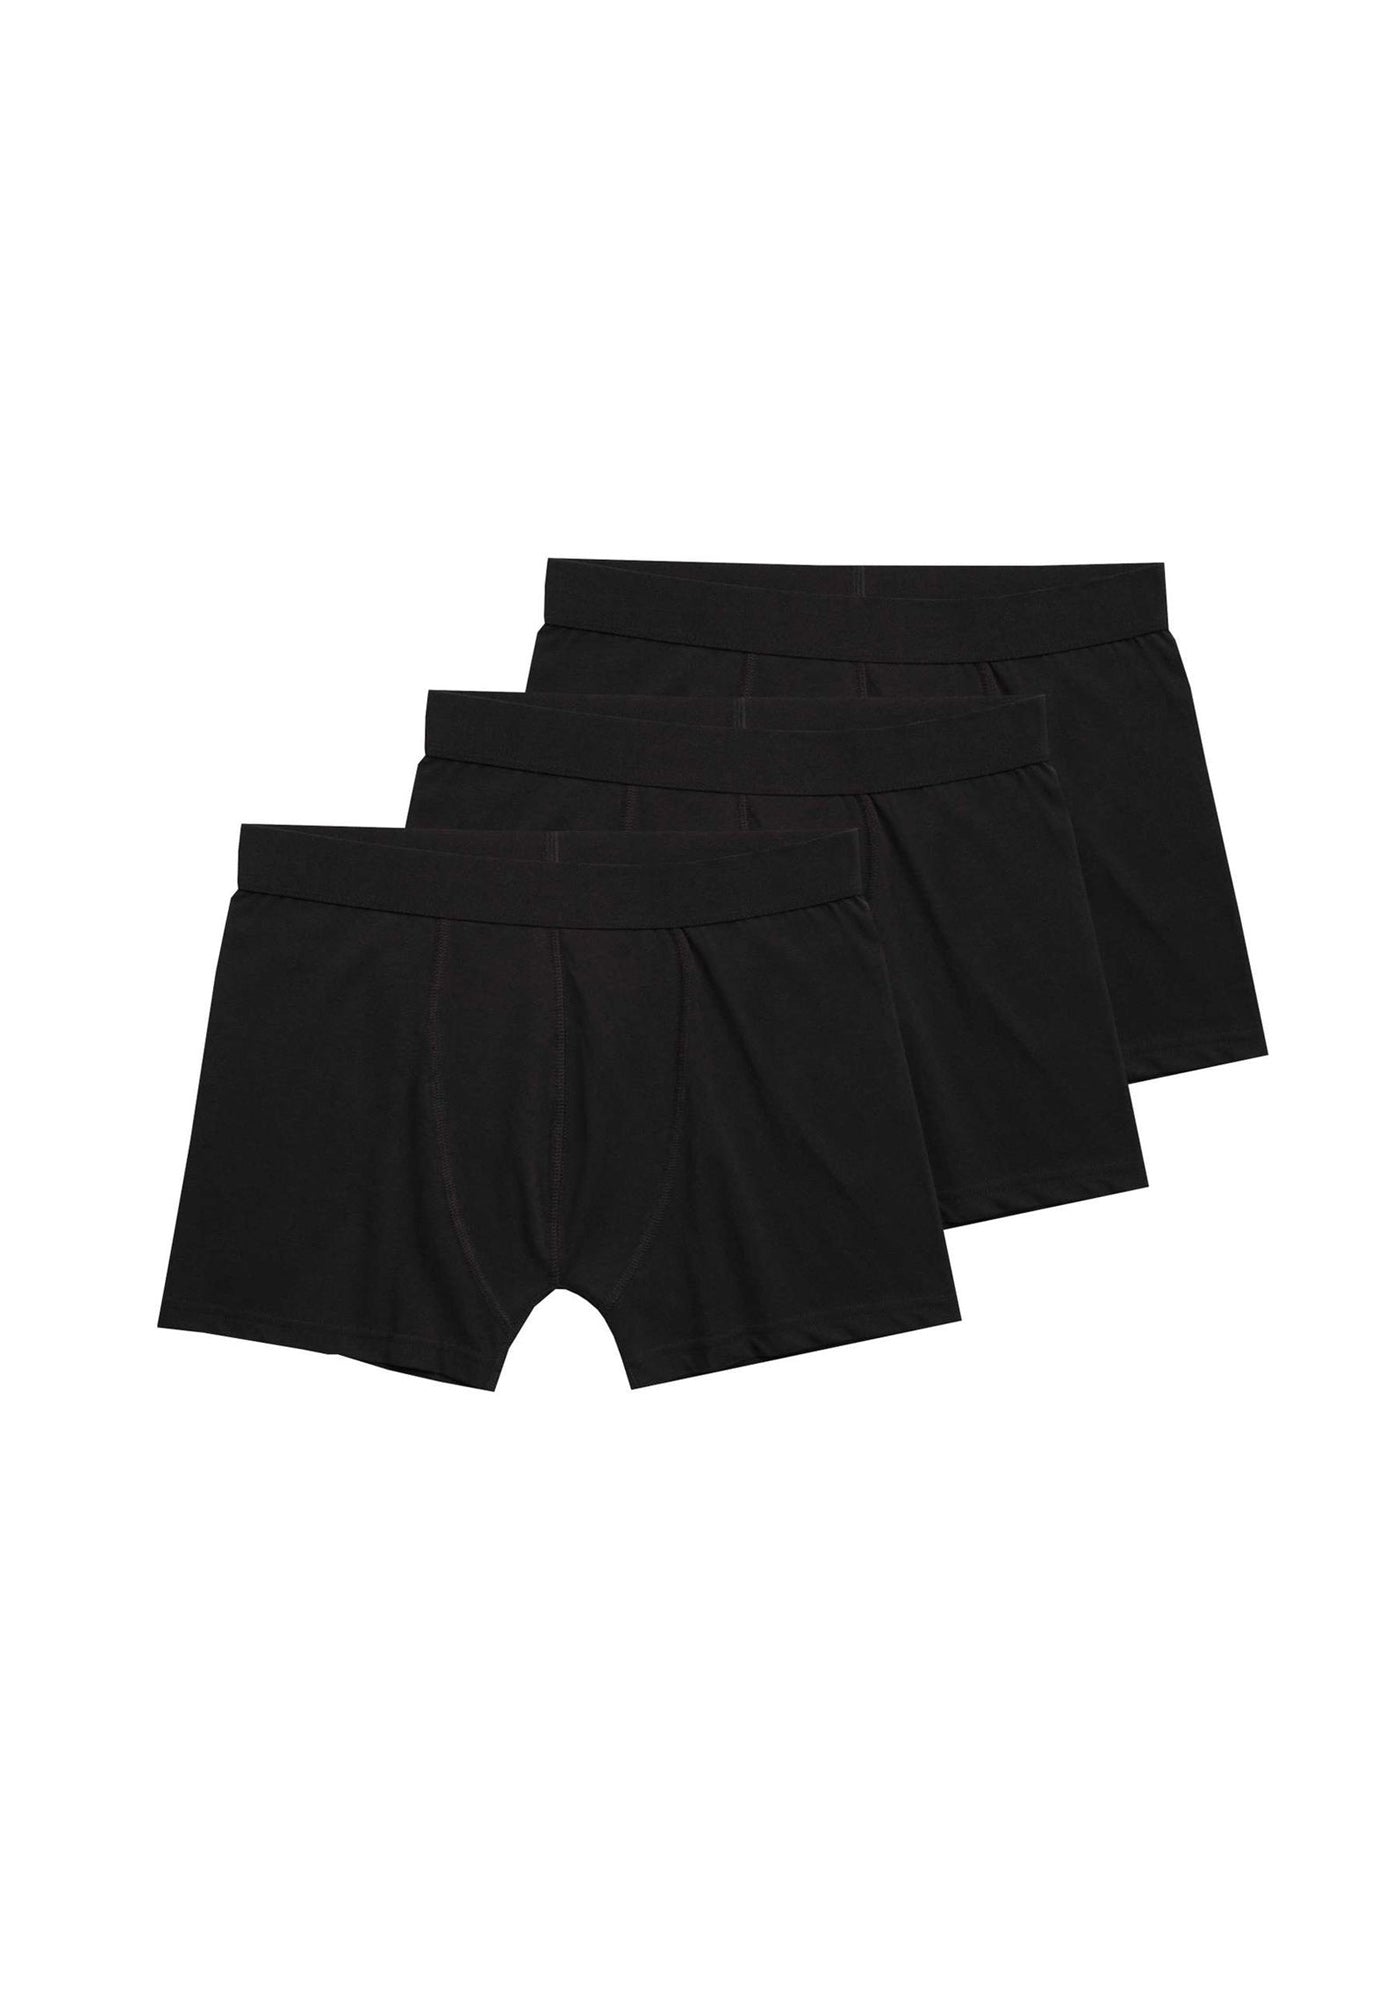 Schwarze Unterhosen 3-Pack TT15 aus Bio-Baumwolle von Thokkthokk